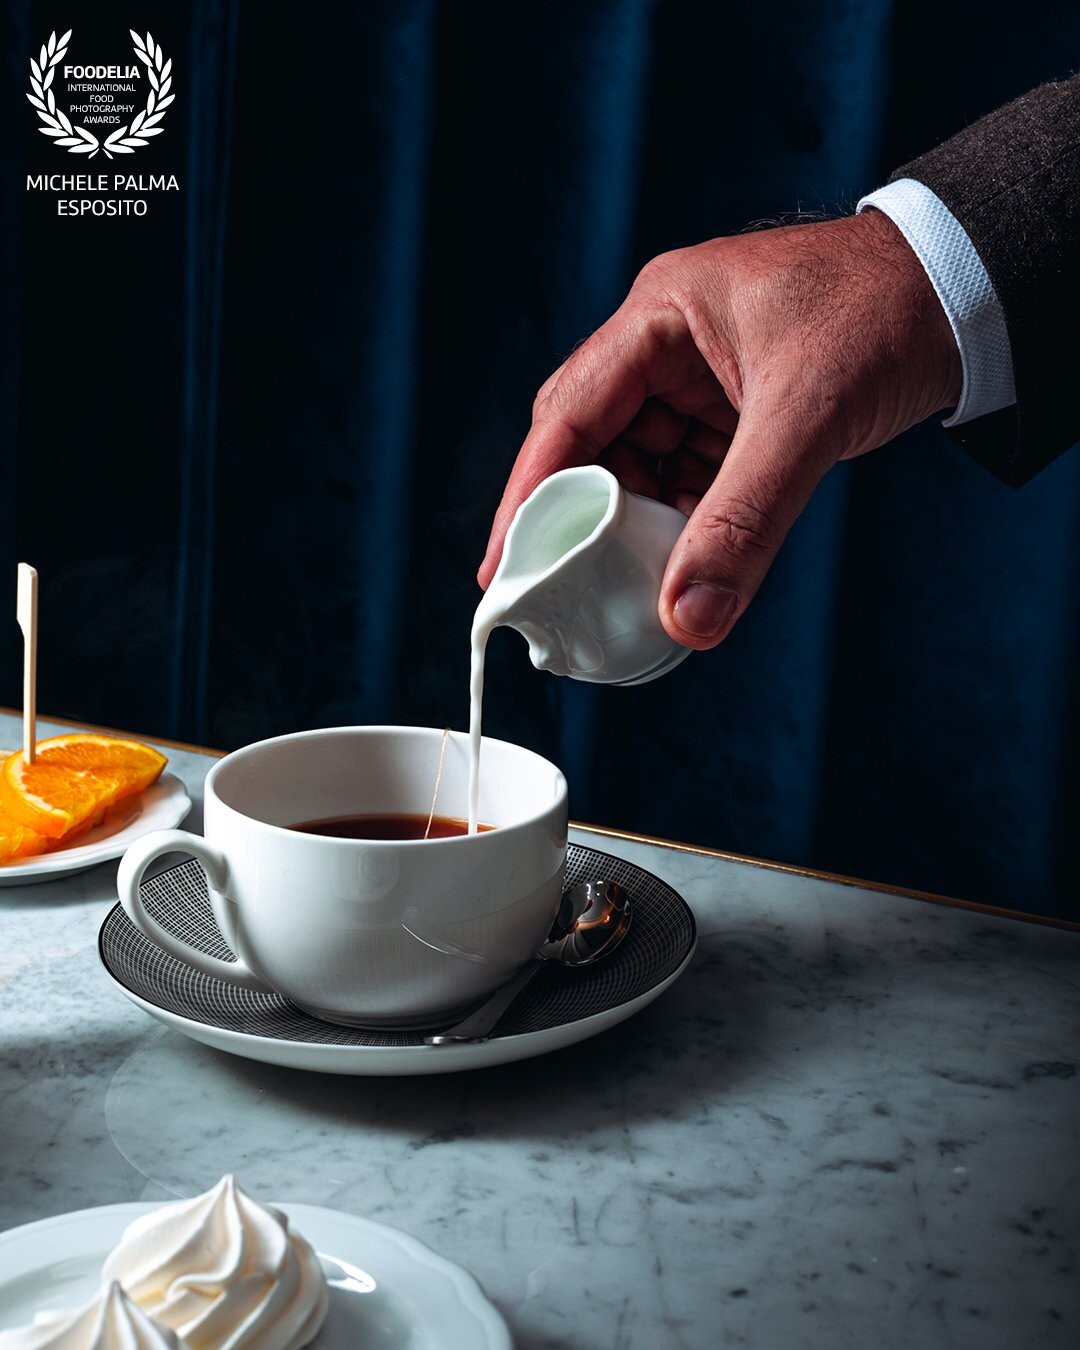 Un aggiunta di latte ad una tazza di tè esalta il suo sapore, dando un tocco di cremosità.<br />
Assaporarla in una elegante location come il Teatro San Carlo Cafè è qualcosa di unico.